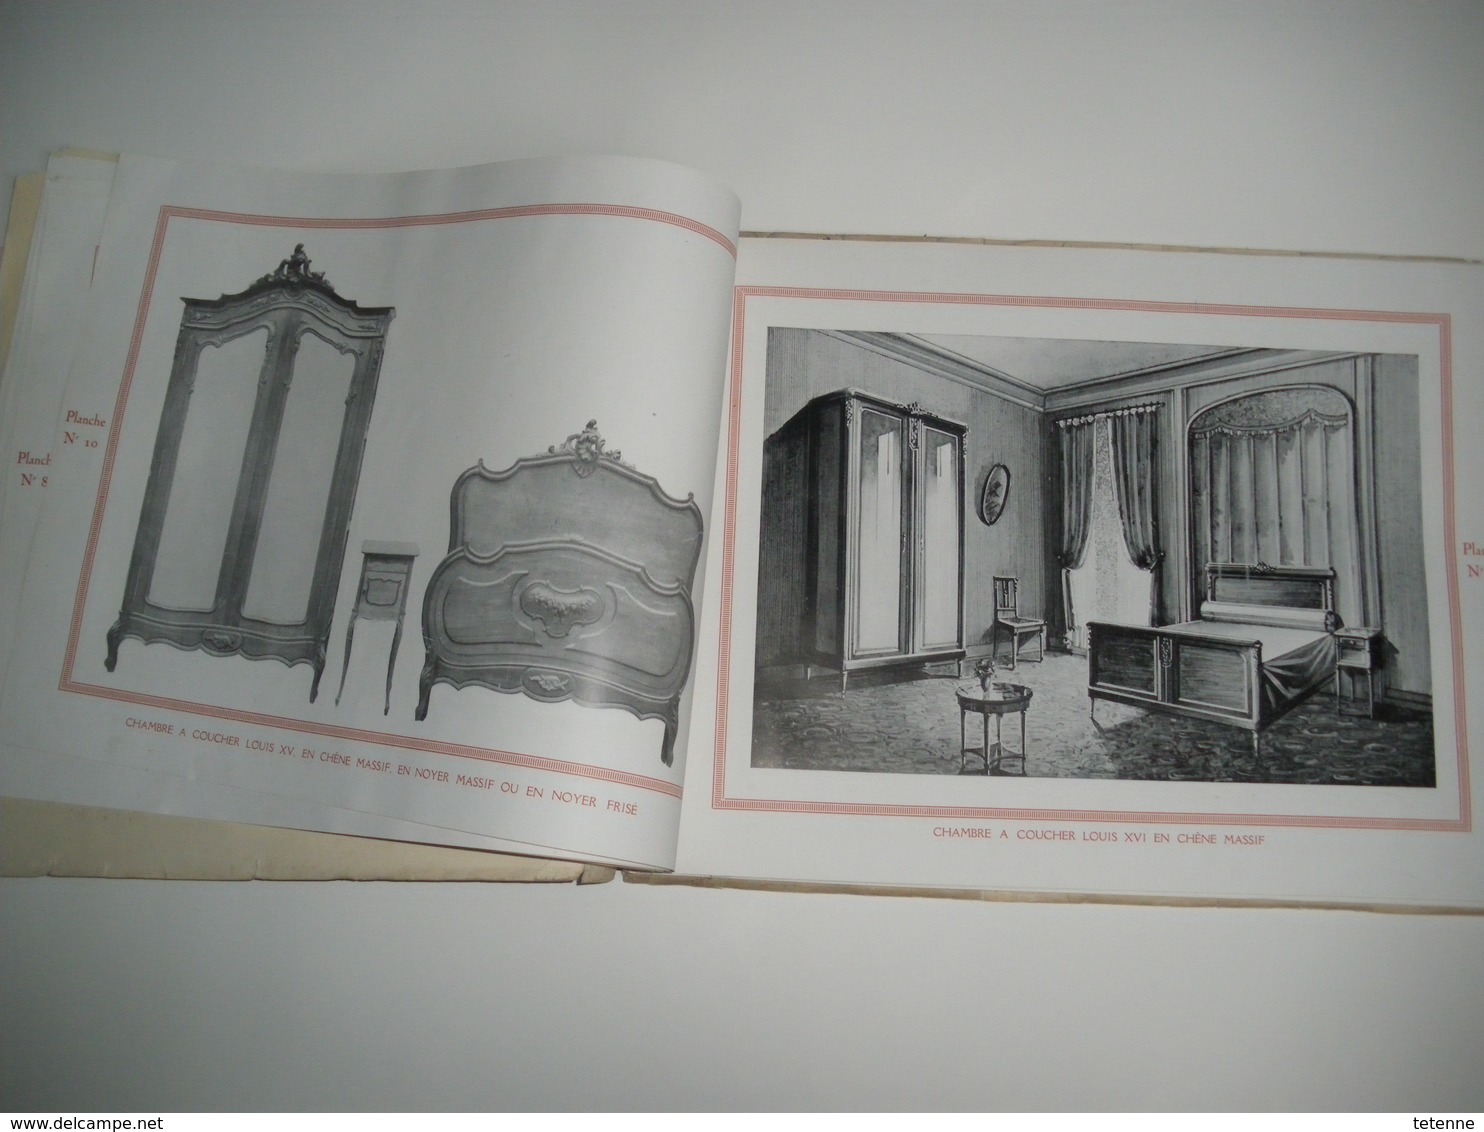 catalogue AU BON MEUBLE 30 rue des Carmellites CAEN J MACAIRE et cie 67 planches d' interrieur .art déco 1925 1930